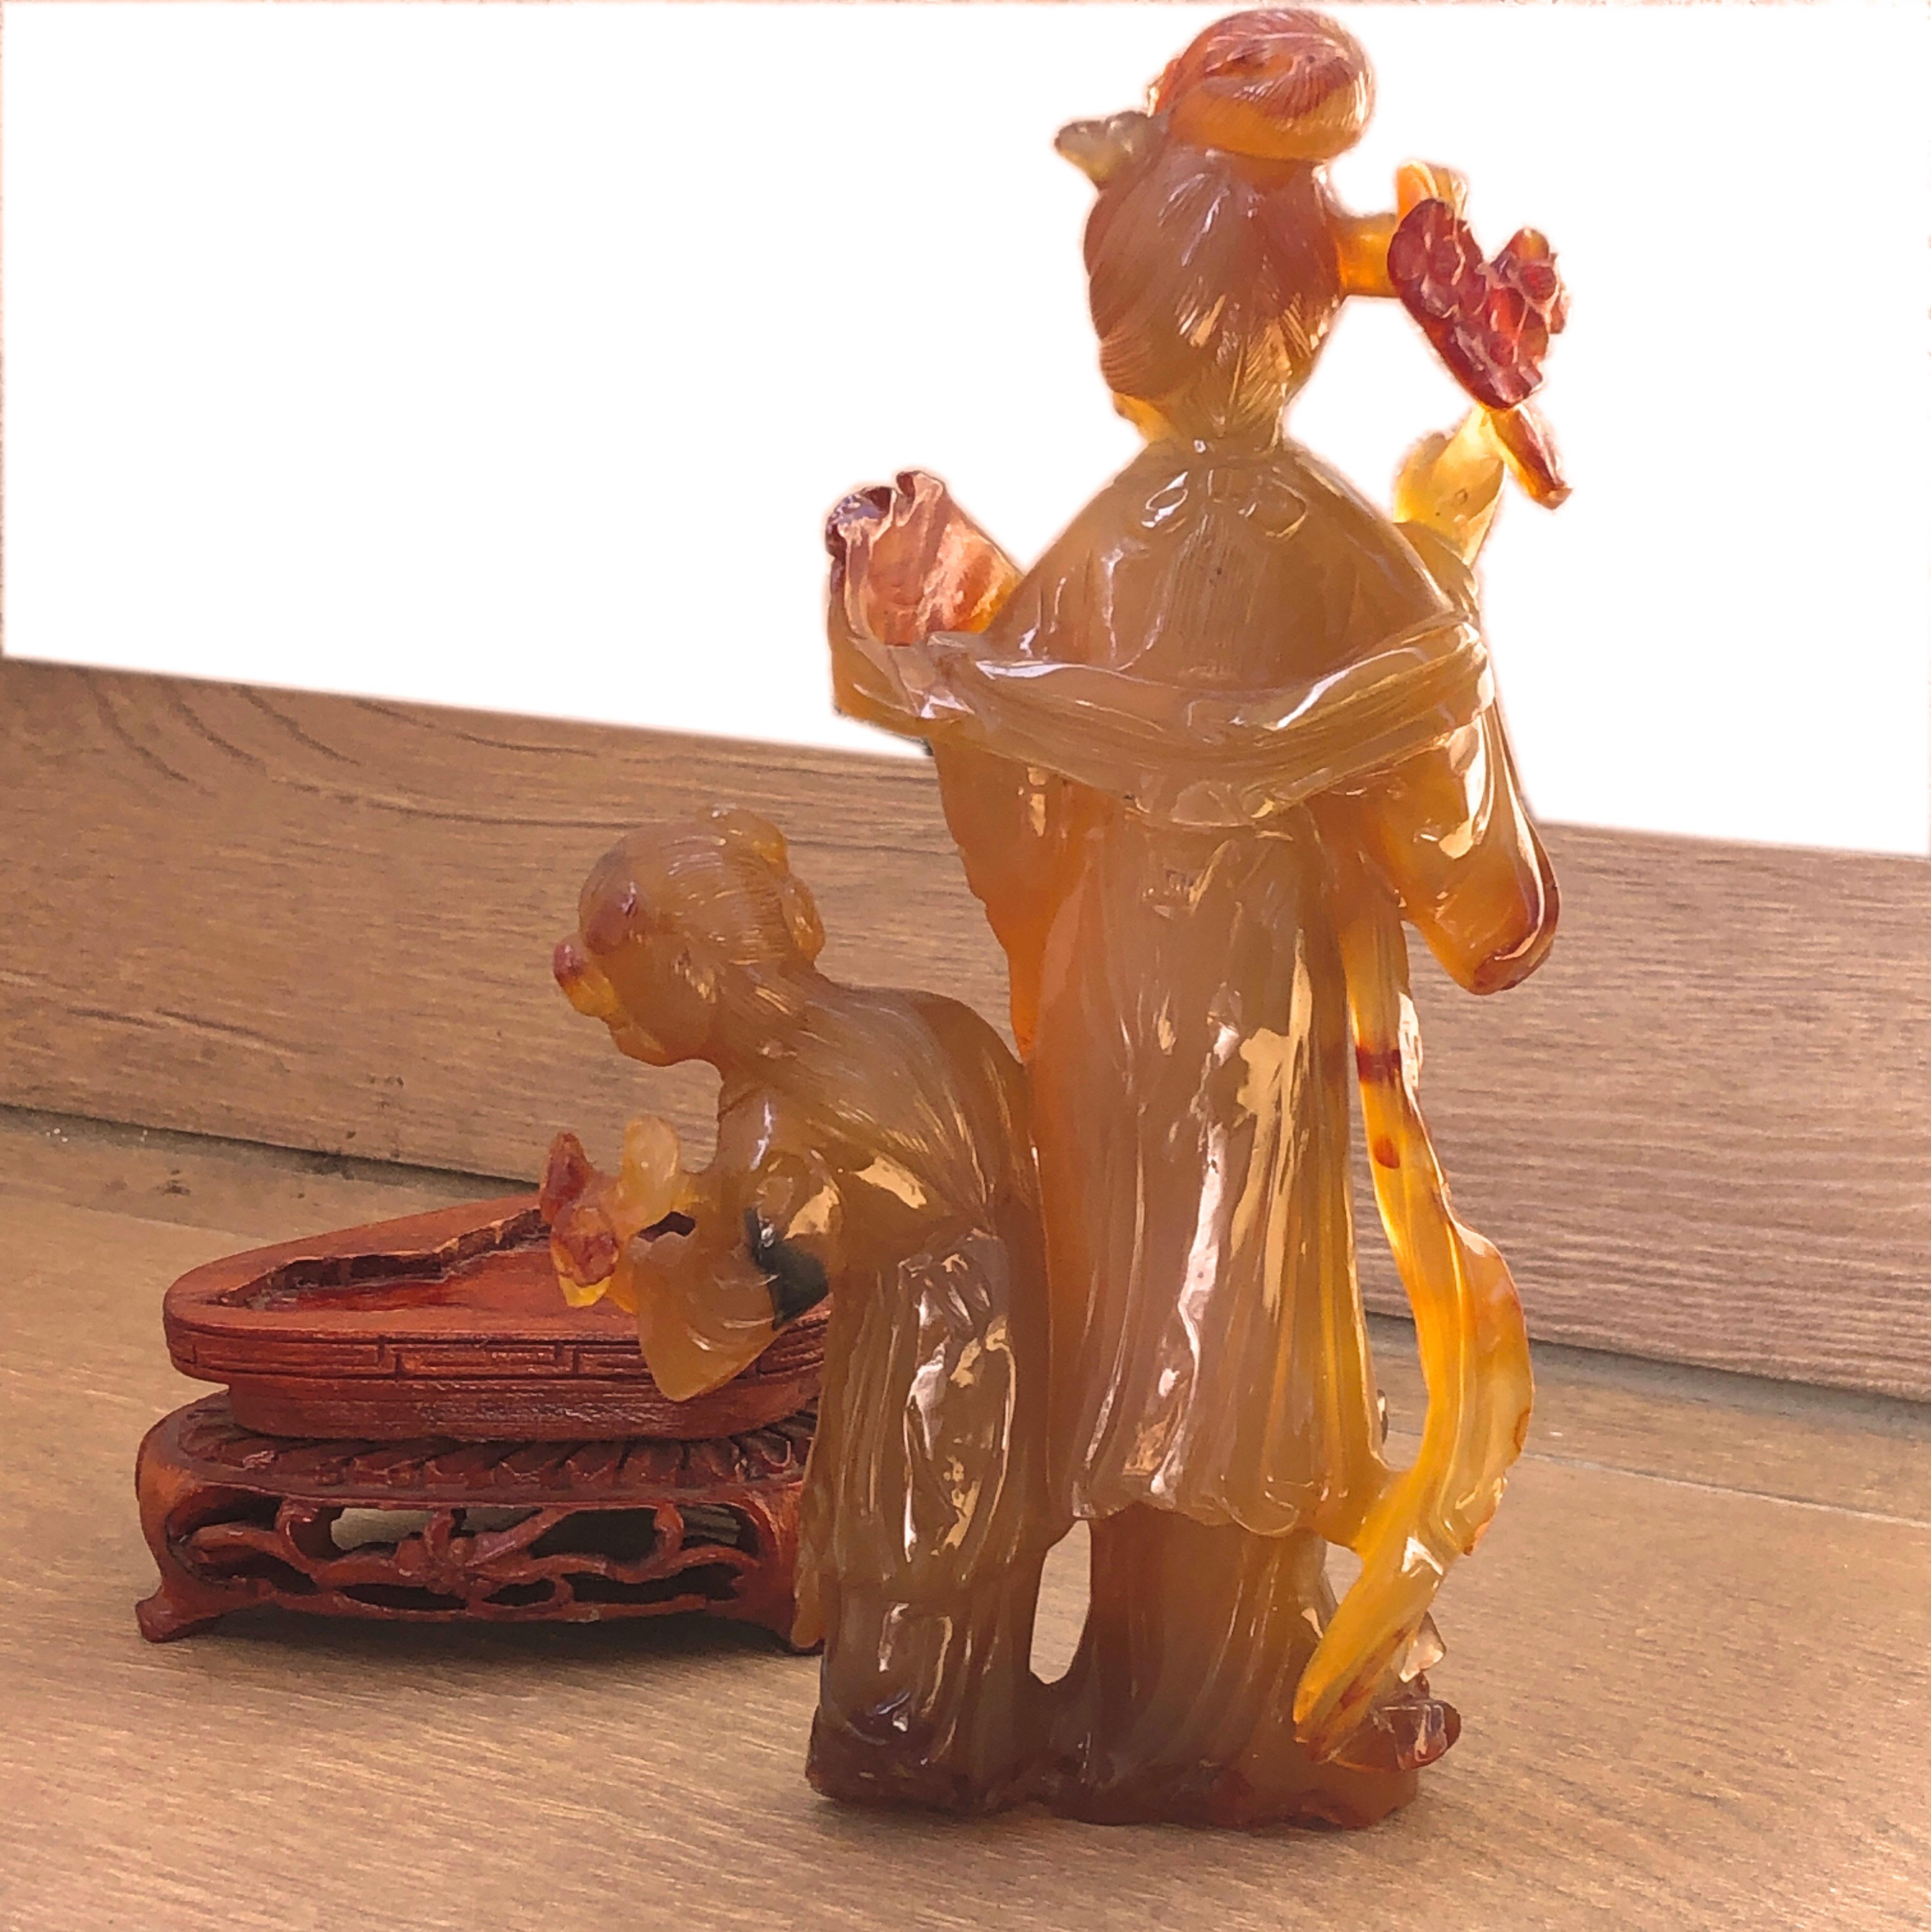 Einzigartig, Original 1930, Chinesischer Export Natürlicher roter Karneol Dame und Baby-Girl Figurinen. Der rote Karneol ist indischen Ursprungs und die Schnitz- und Gravurarbeiten sind wunderschön klar und detailliert. Seit der Antike wurde der